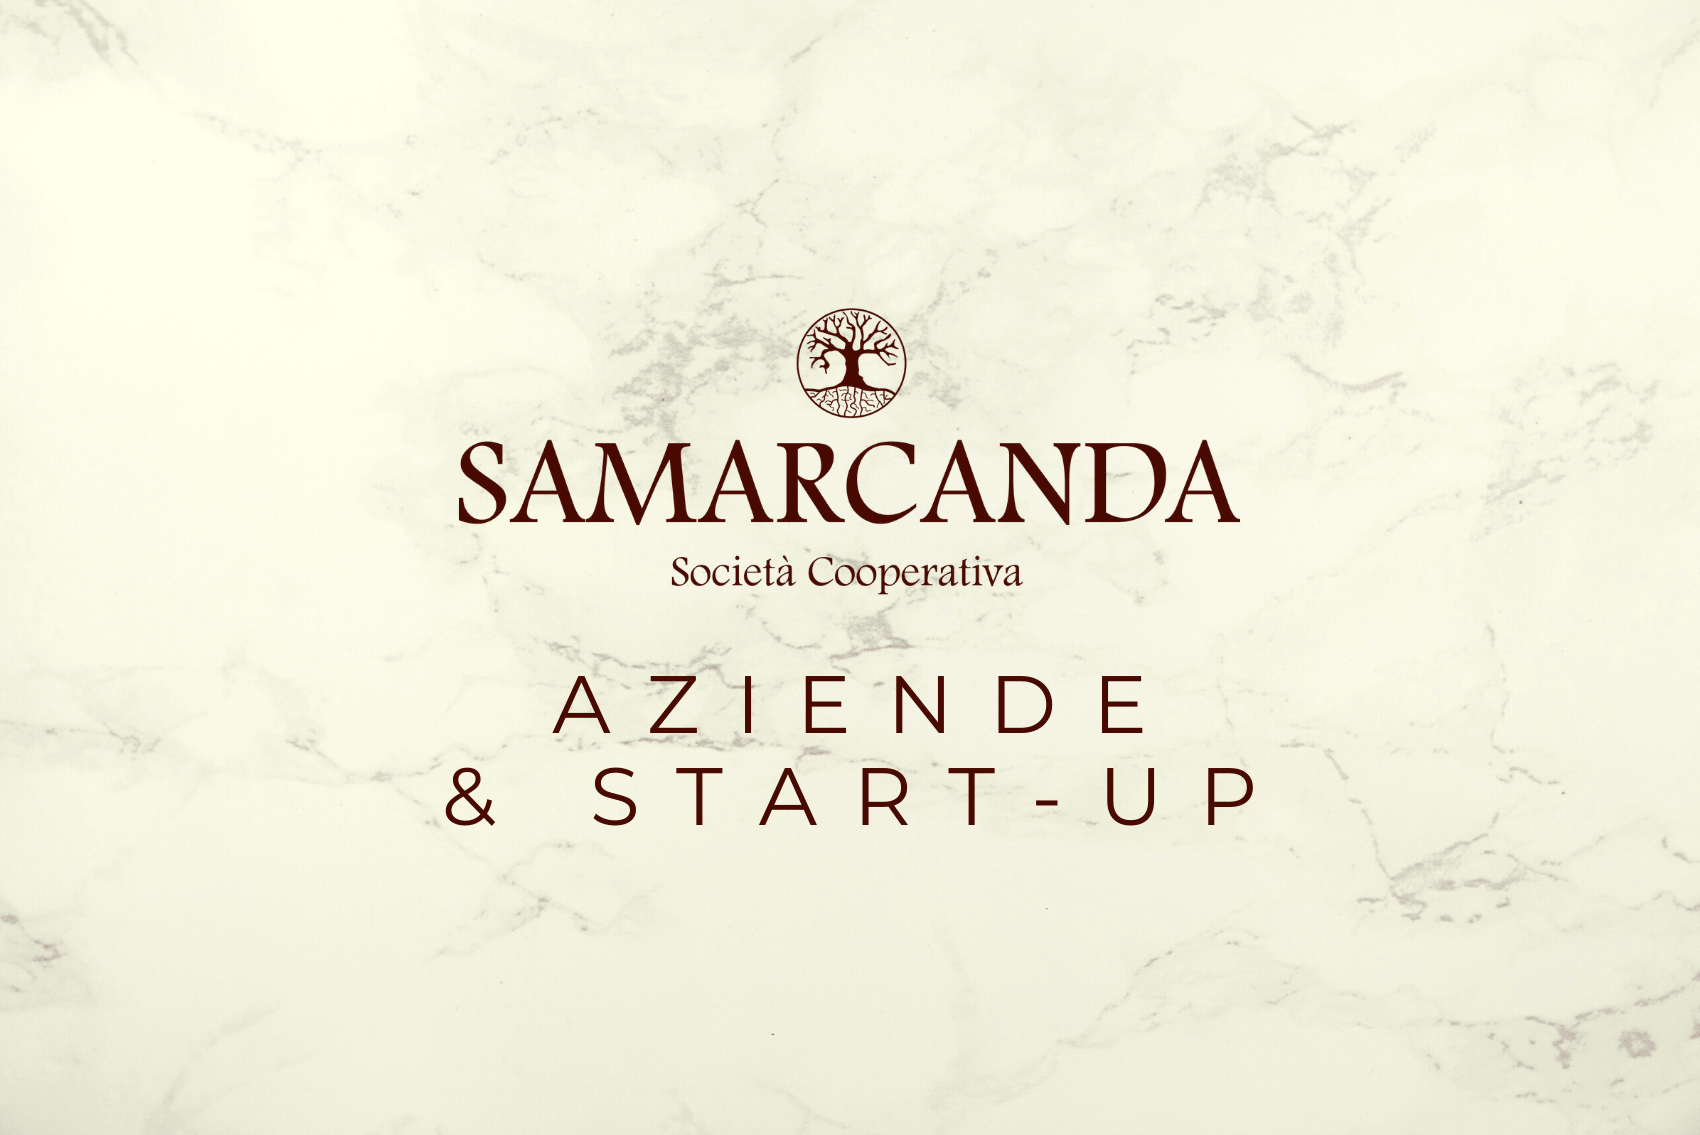 Riquadro Aziende & Start-up della pagina servizi Samarcanda Società Cooperativa